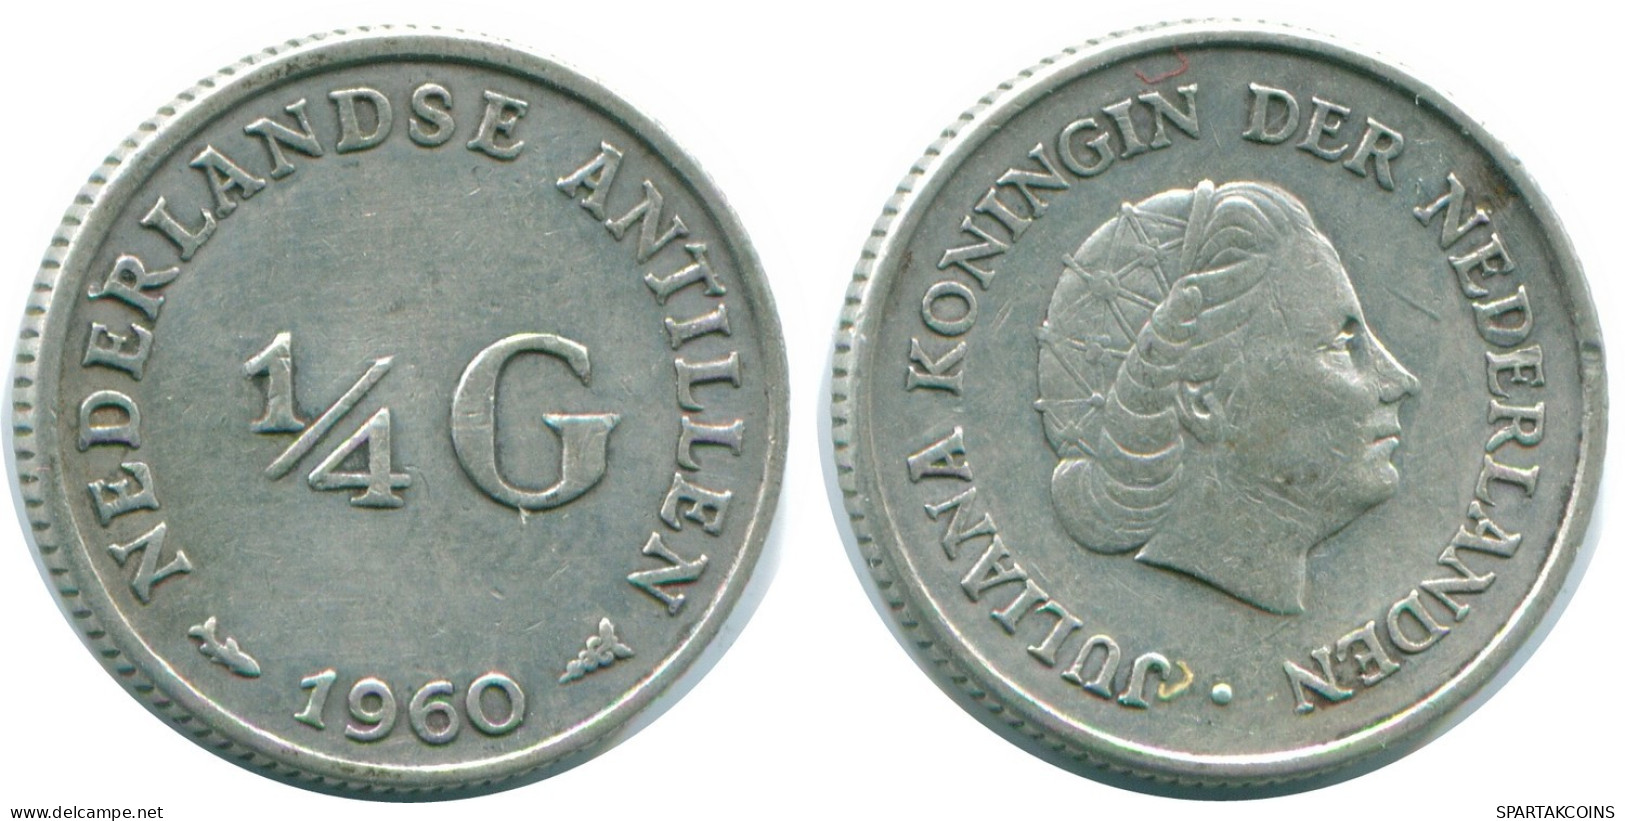 1/4 GULDEN 1960 NIEDERLÄNDISCHE ANTILLEN SILBER Koloniale Münze #NL11054.4.D.A - Antilles Néerlandaises